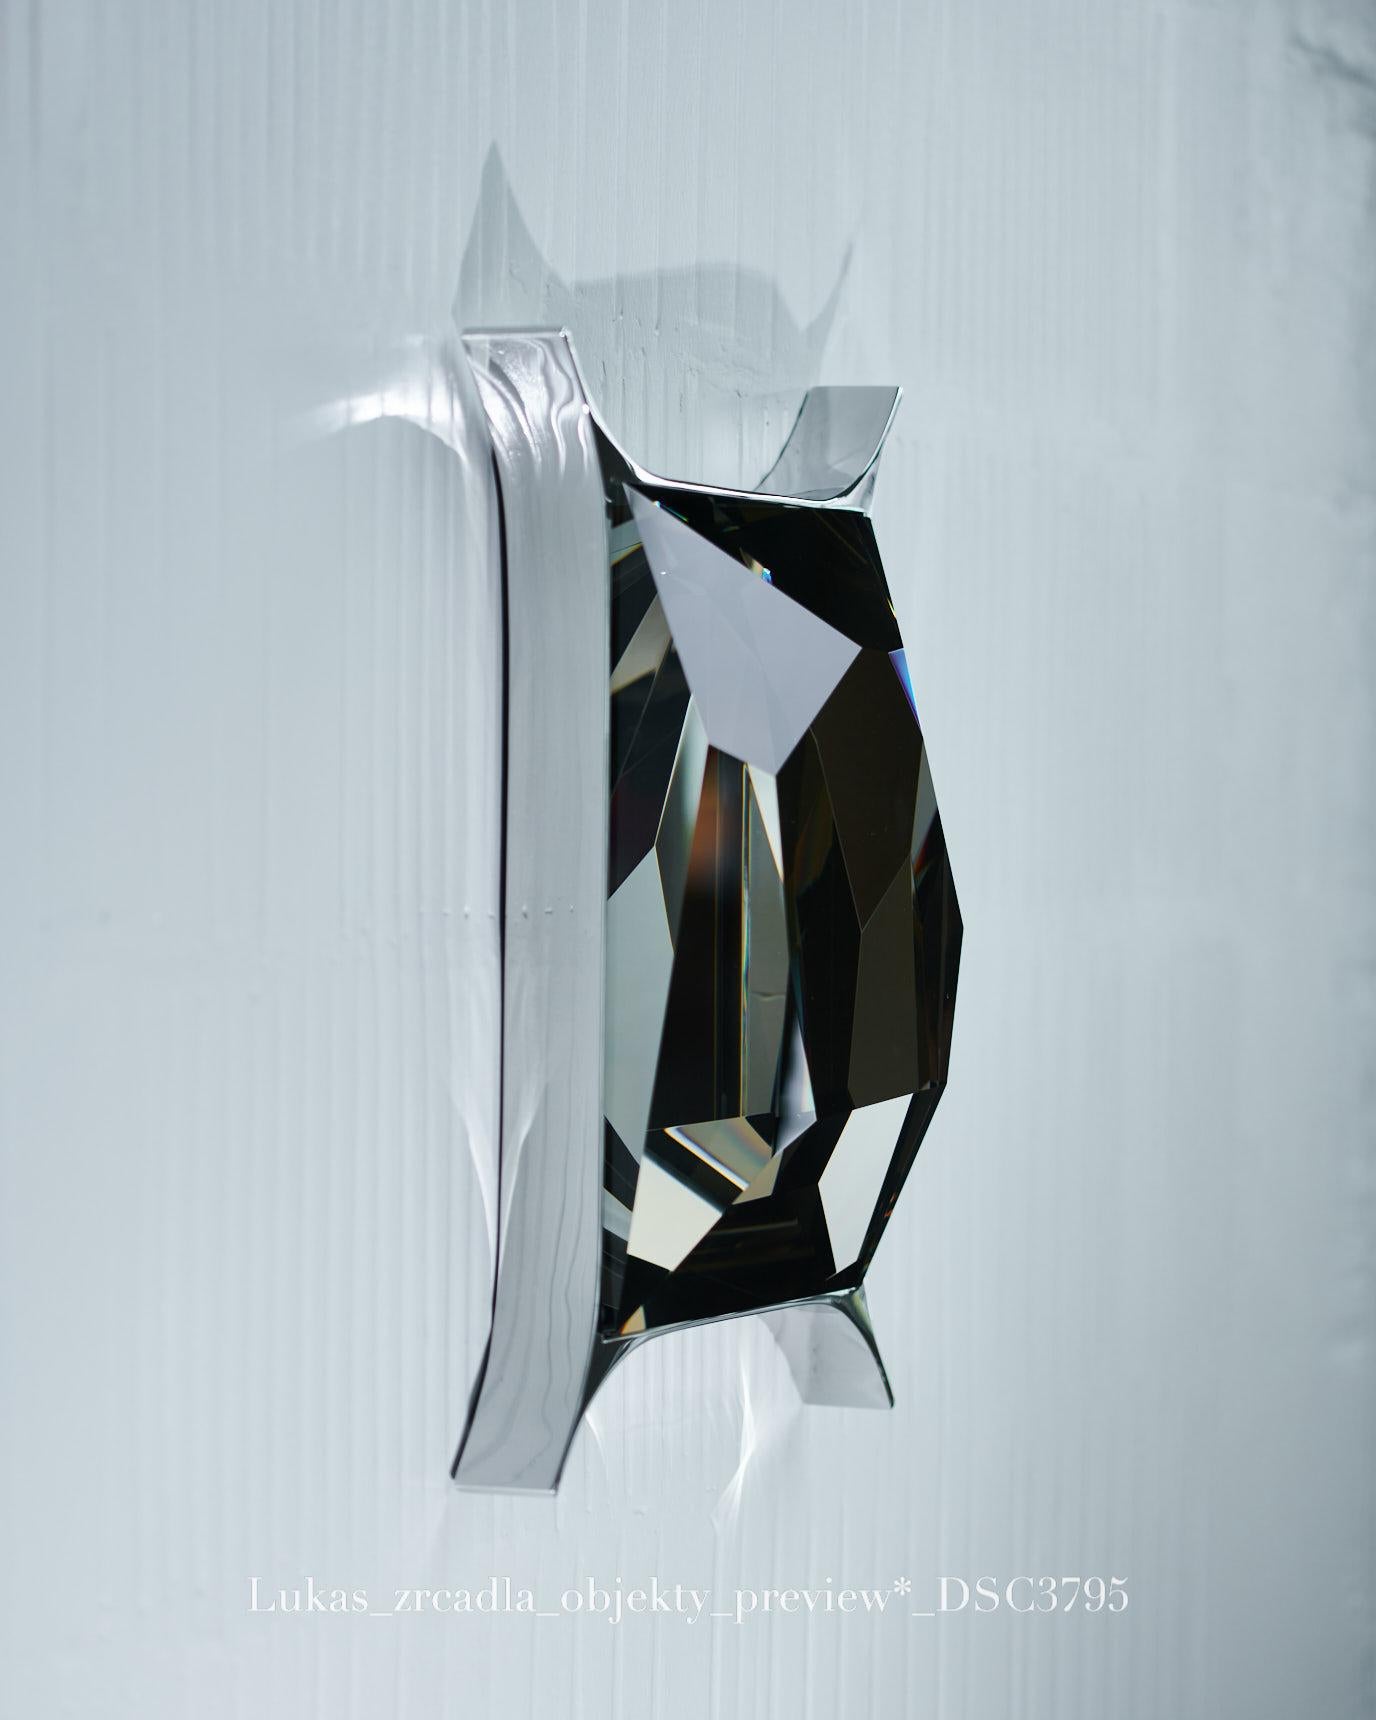 Steel Cut Optical Glass Wall Sculpture by Lukas Novak